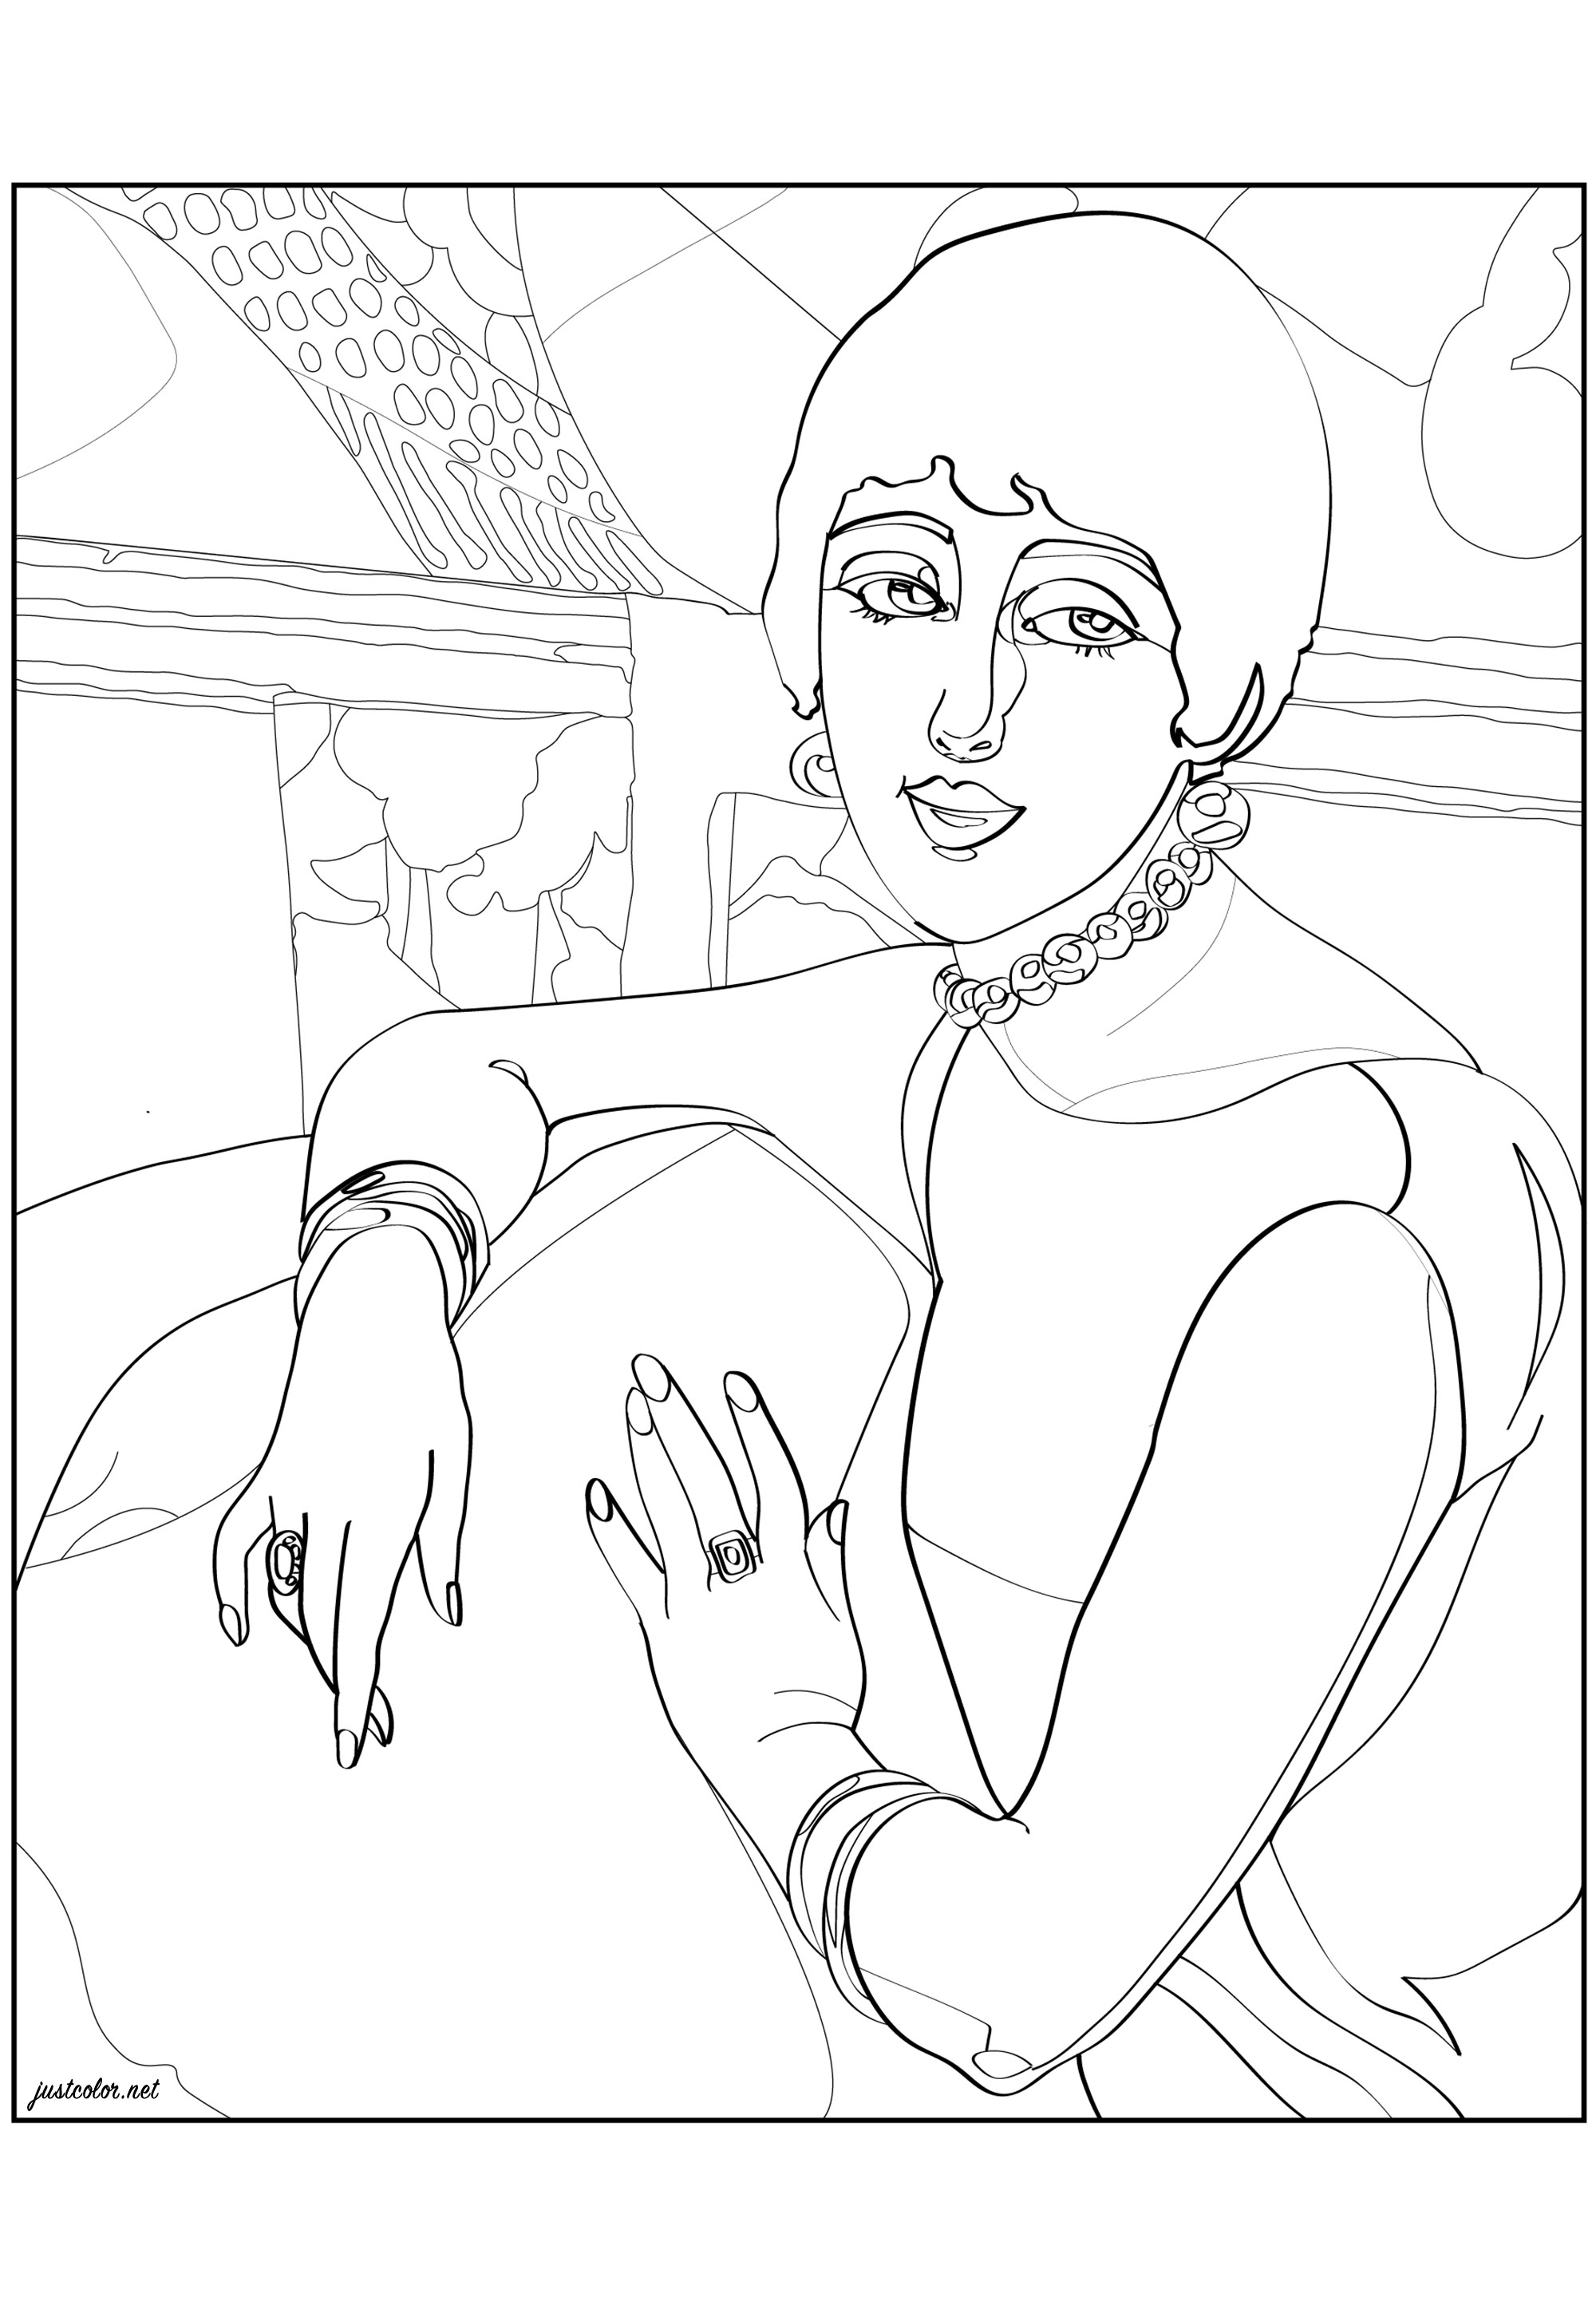 Página para colorear creada a partir del cuadro 'Lirio' (1922) de Gerda Webener. Wegener (ilustradora y pintora danesa) es conocida por sus ilustraciones de moda en un singular estilo Art Déco o, a veces, Art Nouveau, y también por sus pinturas que traspasaban los límites del género y el amor de su época. Estas obras se clasificaron a veces como erótica lésbica y muchas se inspiraron en su compañera, la mujer transexual Lili Elbe.